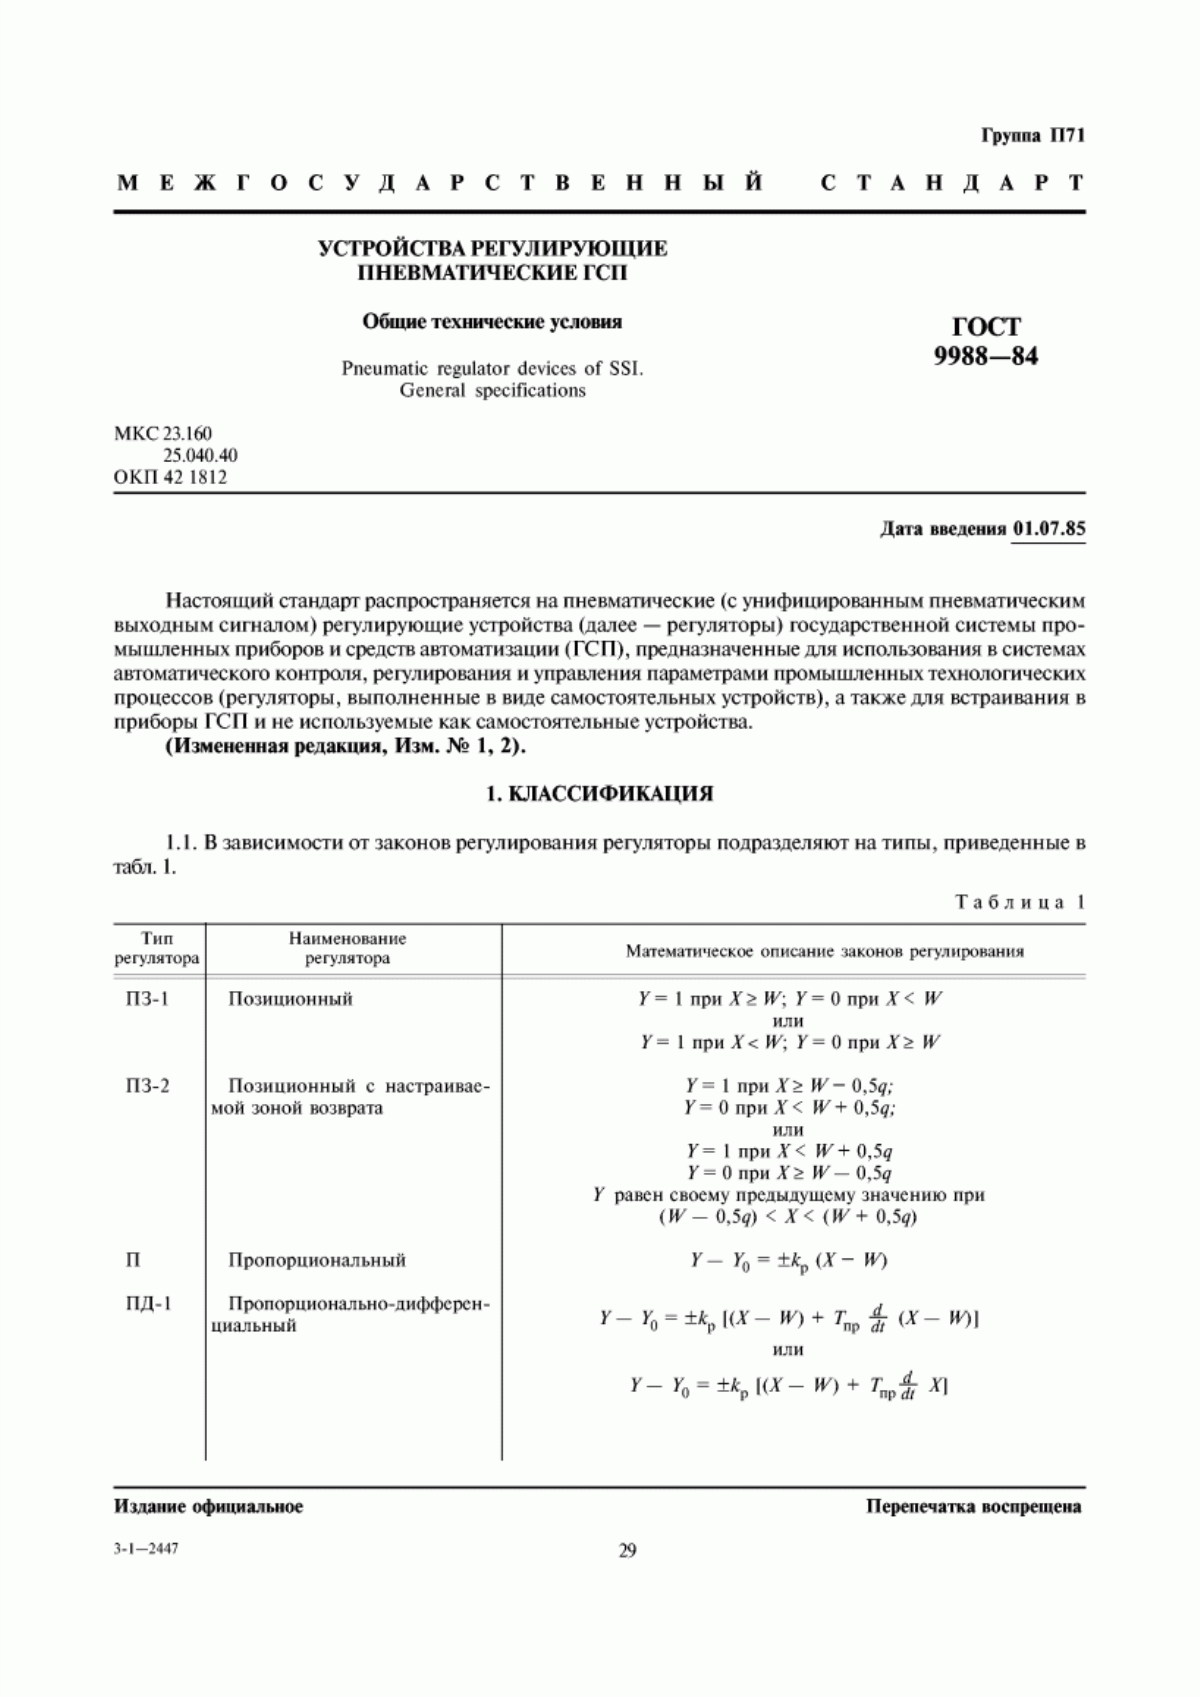 ГОСТ 9988-84 Устройства регулирующие пневматические ГСП. Общие технические условия